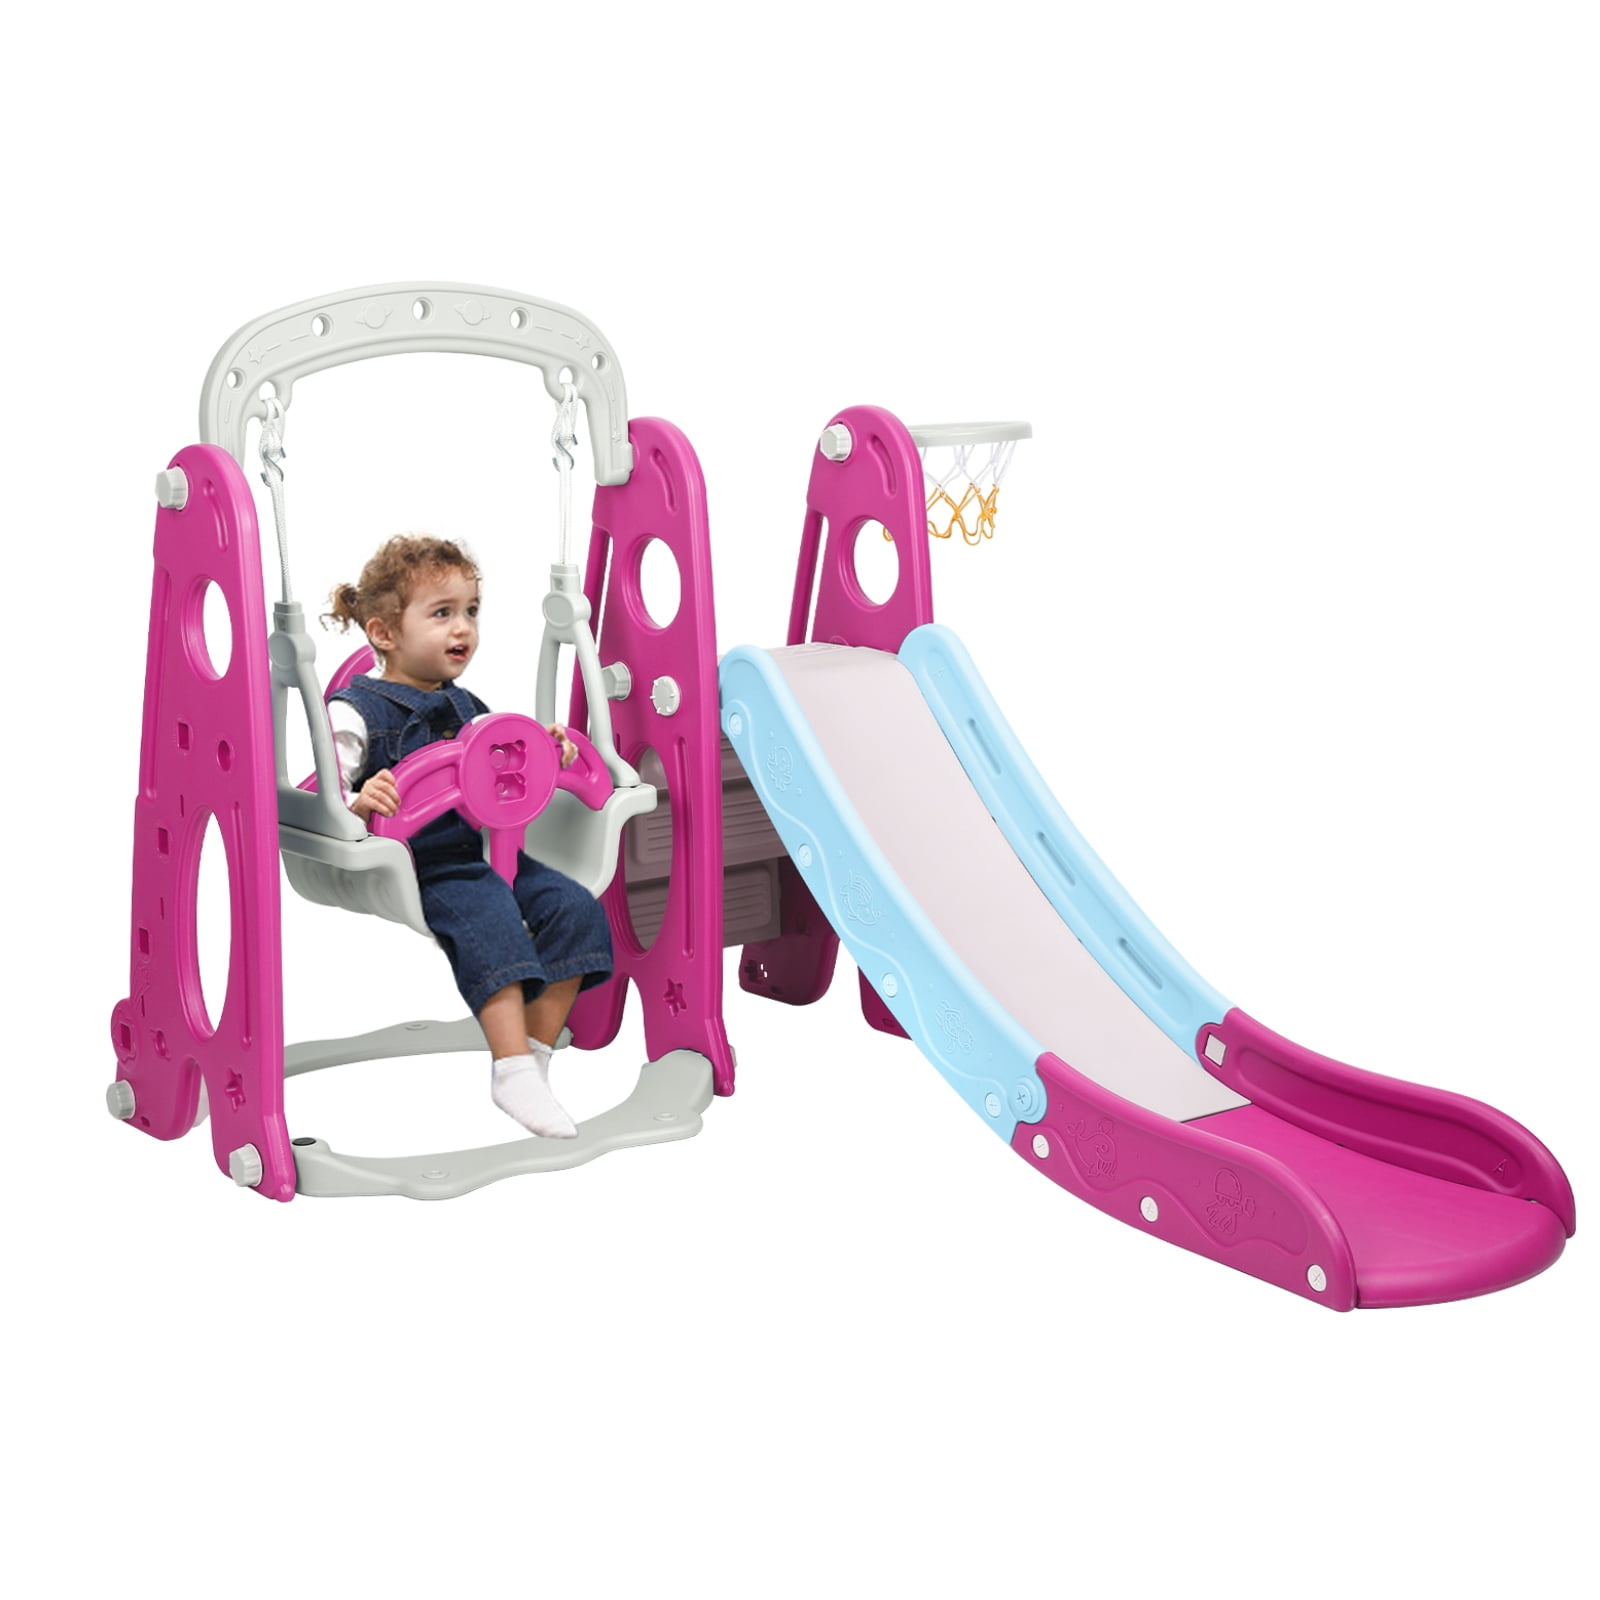 3 in 1 Swing Set For Backyard Playground Slide Fun Playset Outdoor Toddler Kids 